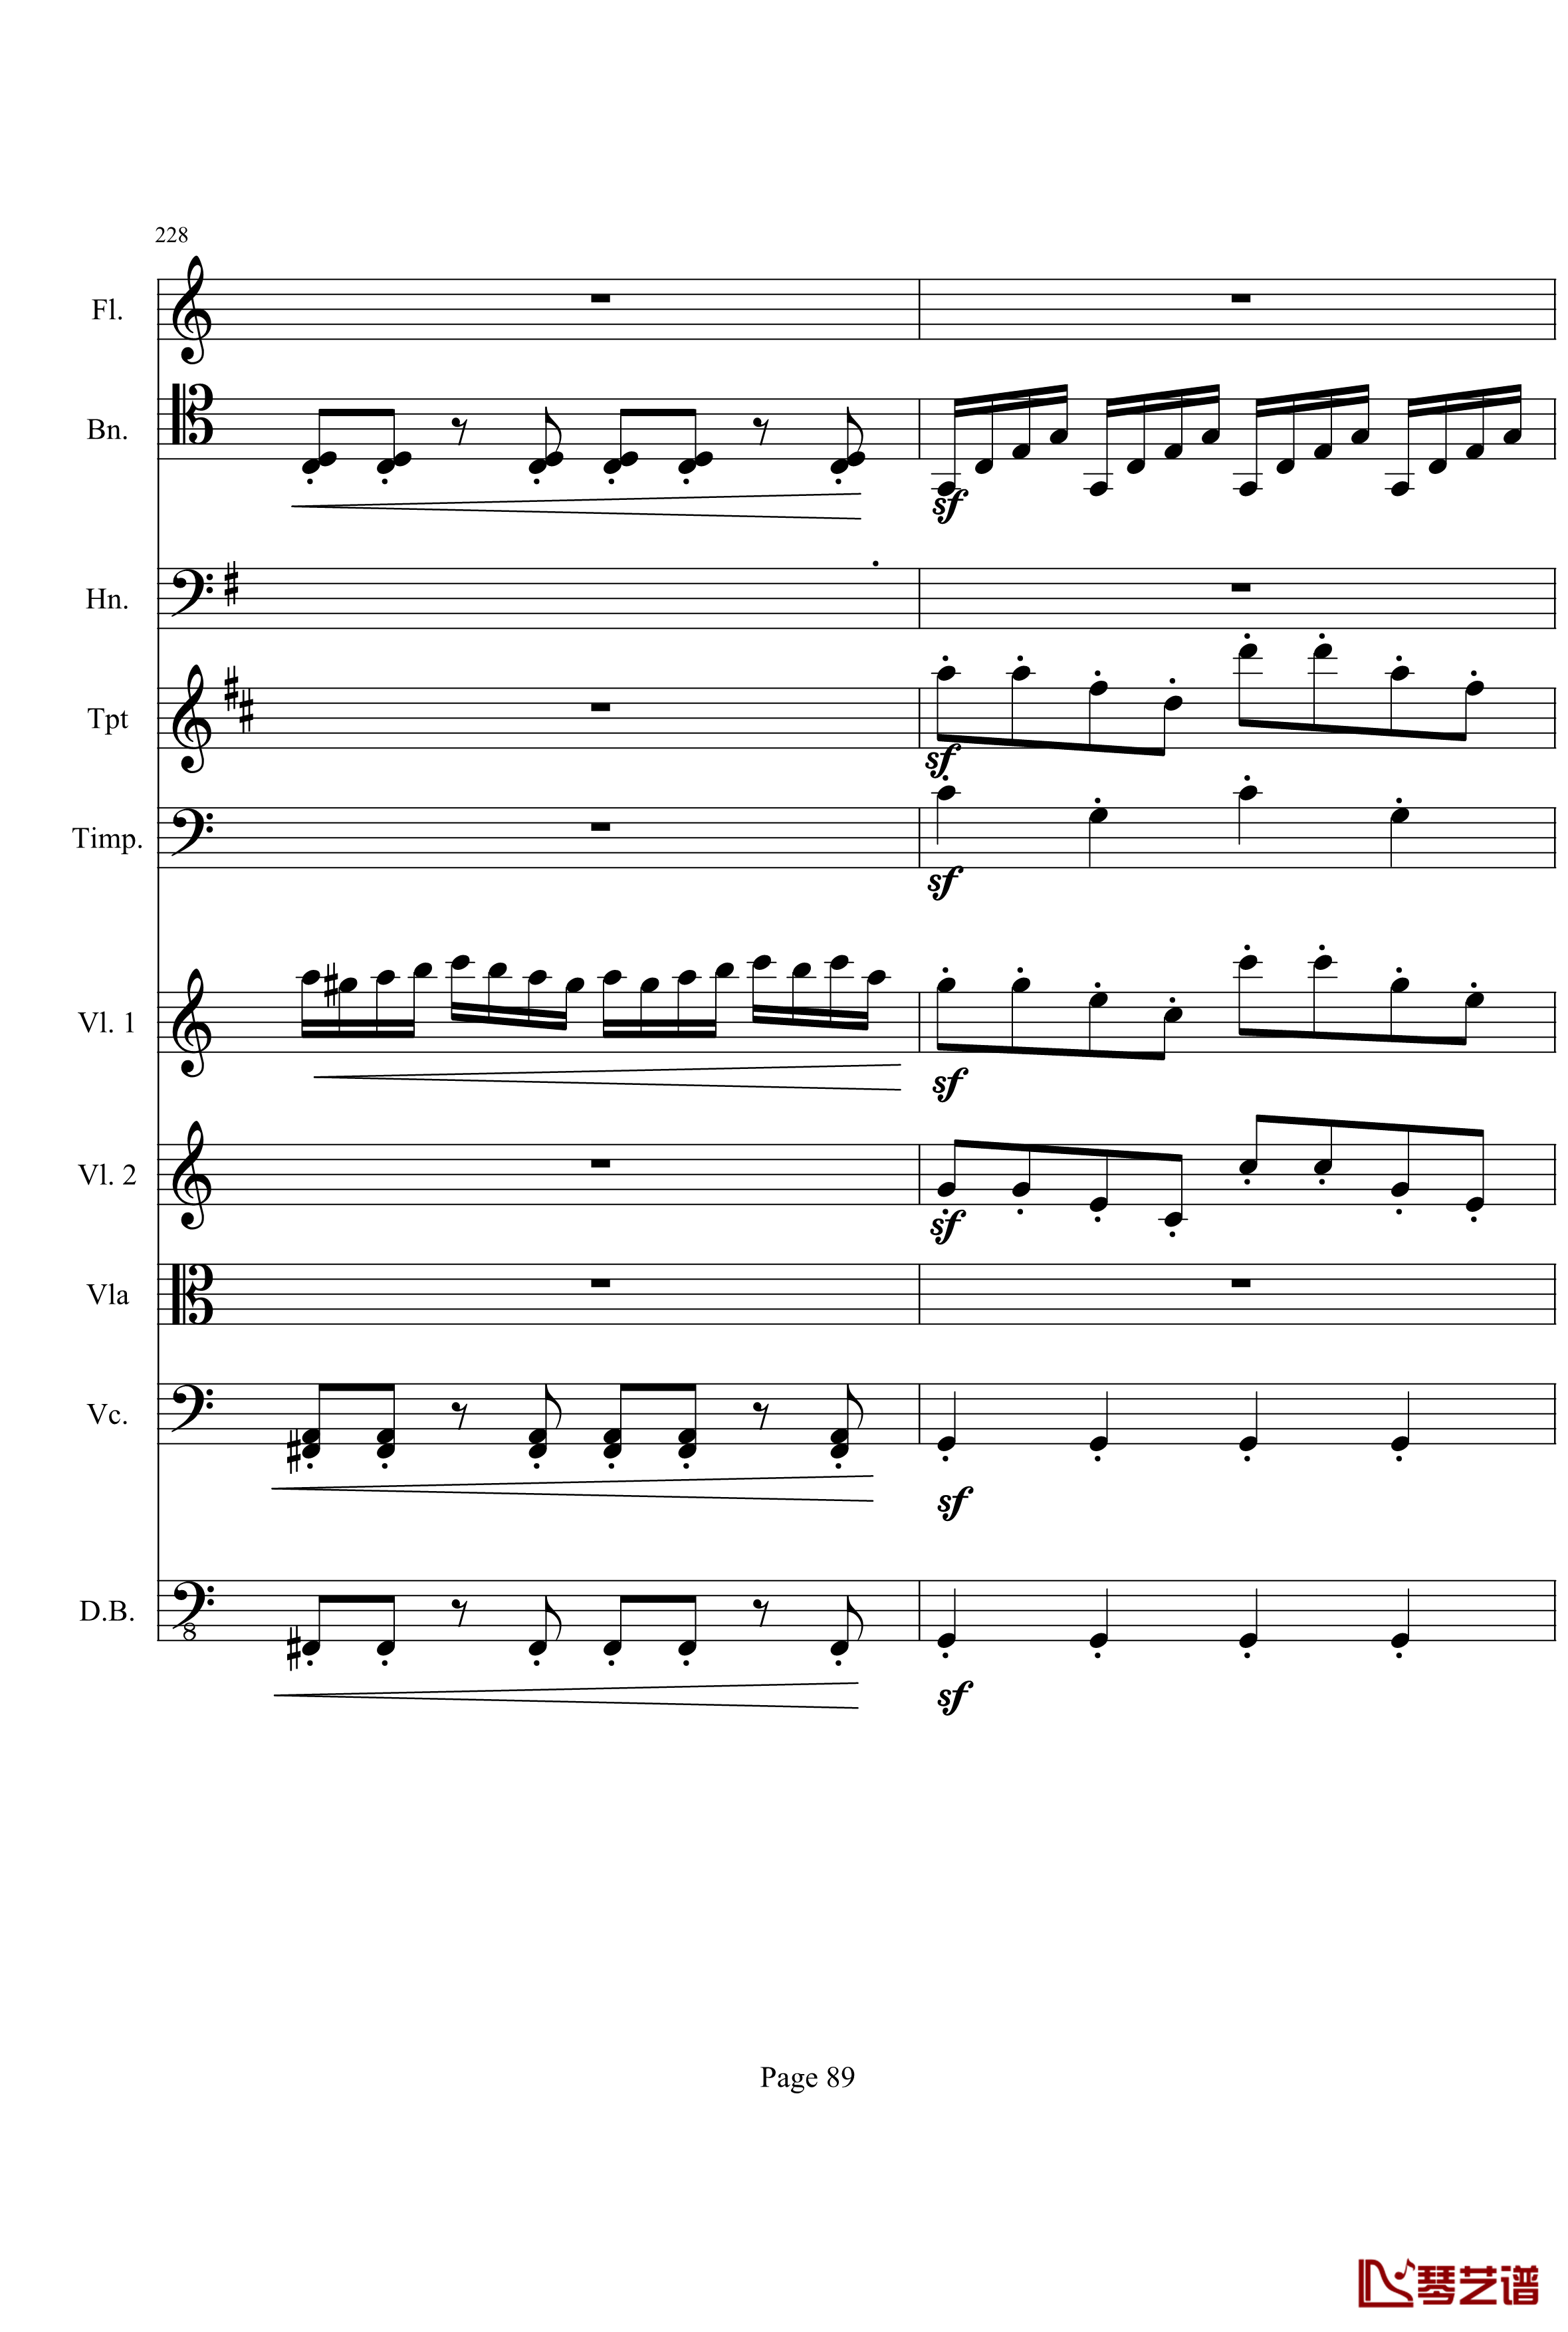 奏鸣曲之交响钢琴谱-第21首-Ⅰ-贝多芬-beethoven89